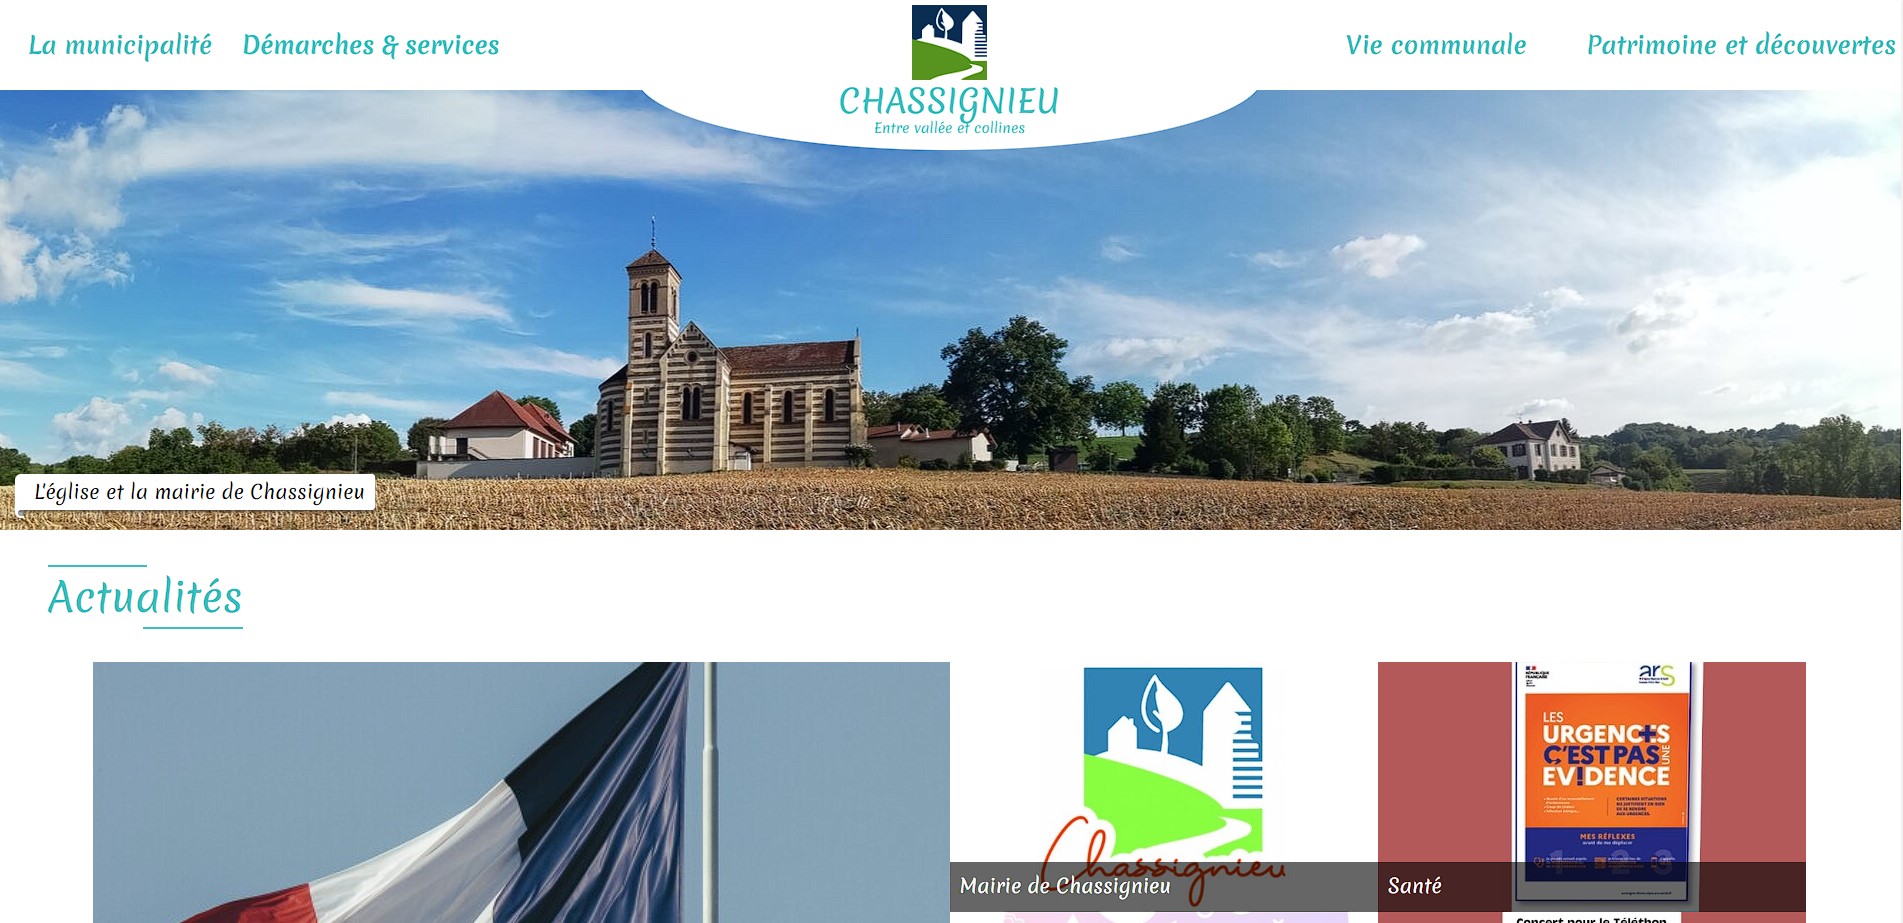 Site internet de la commune de chassignieu en Isère